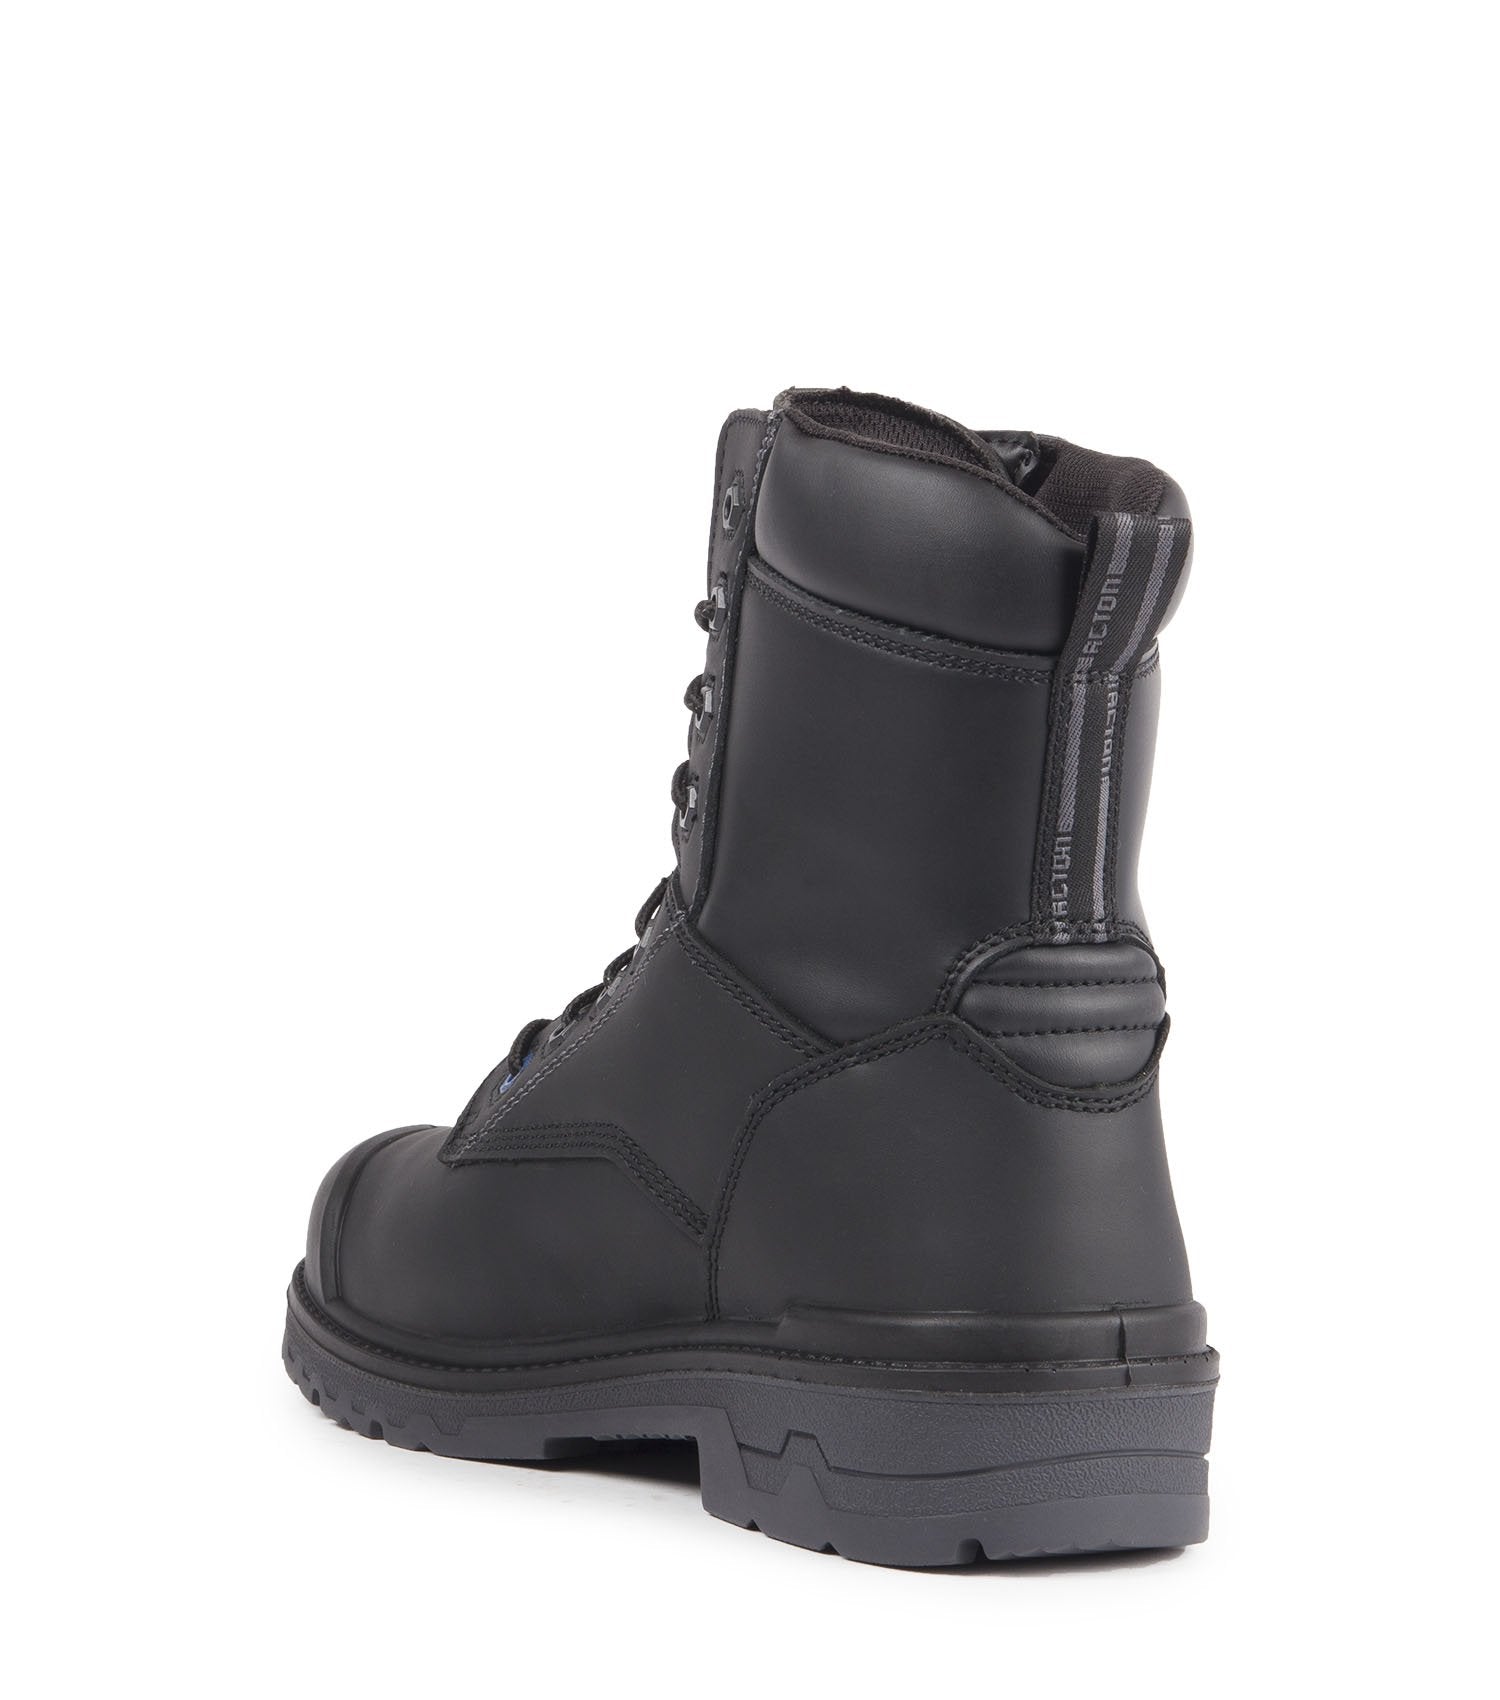 Acton Progum-I-Met 8" Internal Metguard Work Boots | Black | Size 7 to Size 17 Work Boots - Cleanflow